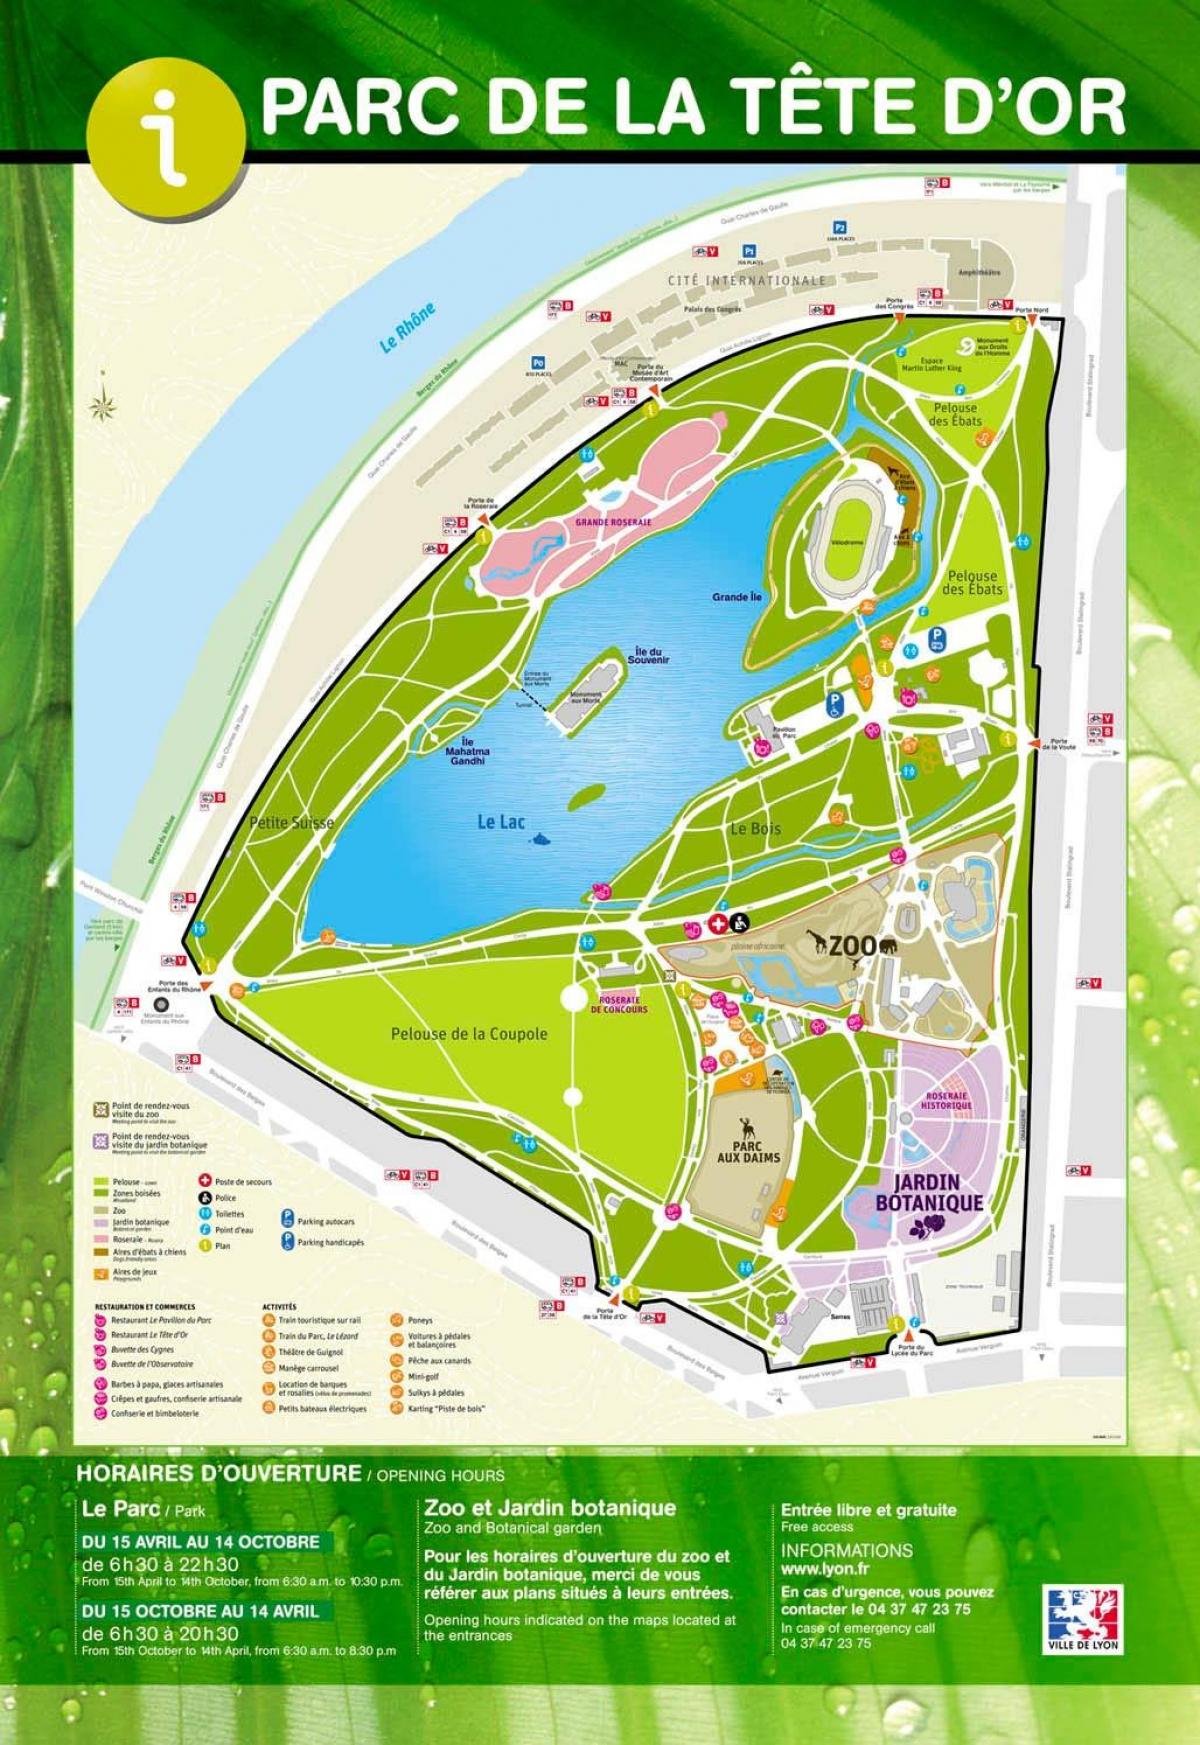 kort af Lyon park